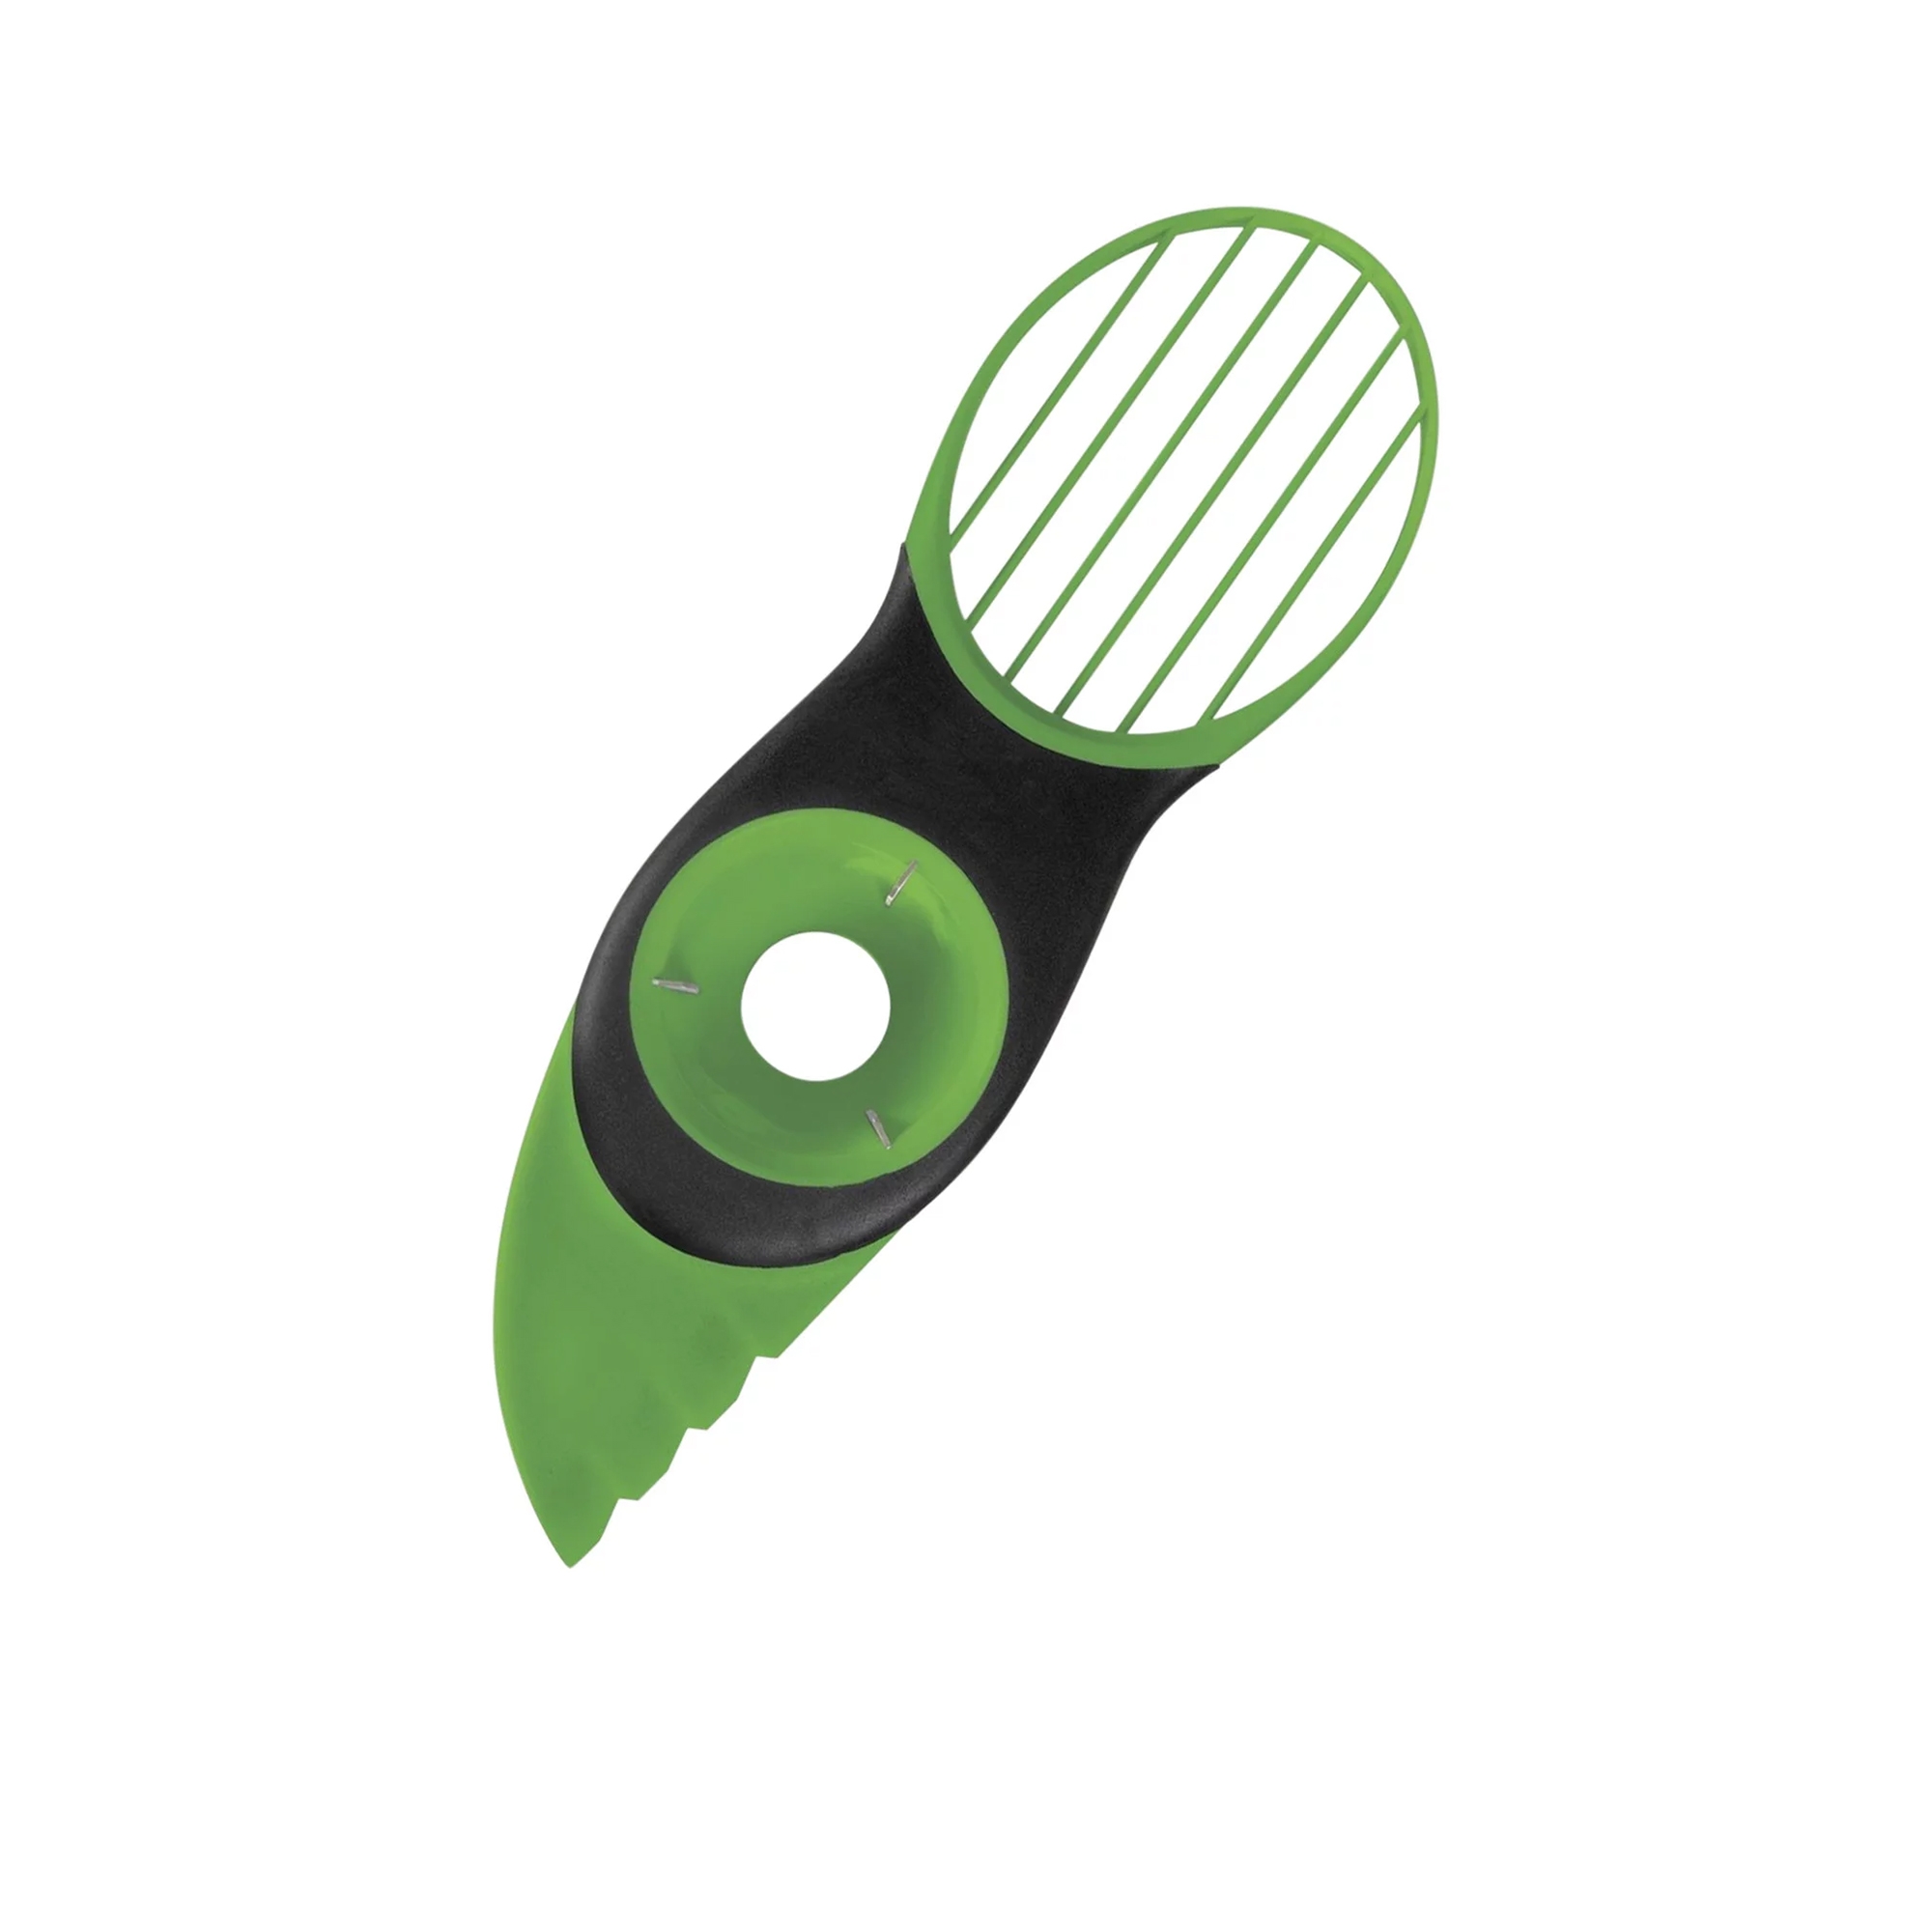 OXO Good Grips 3 in 1 Avocado Slicer Image 1